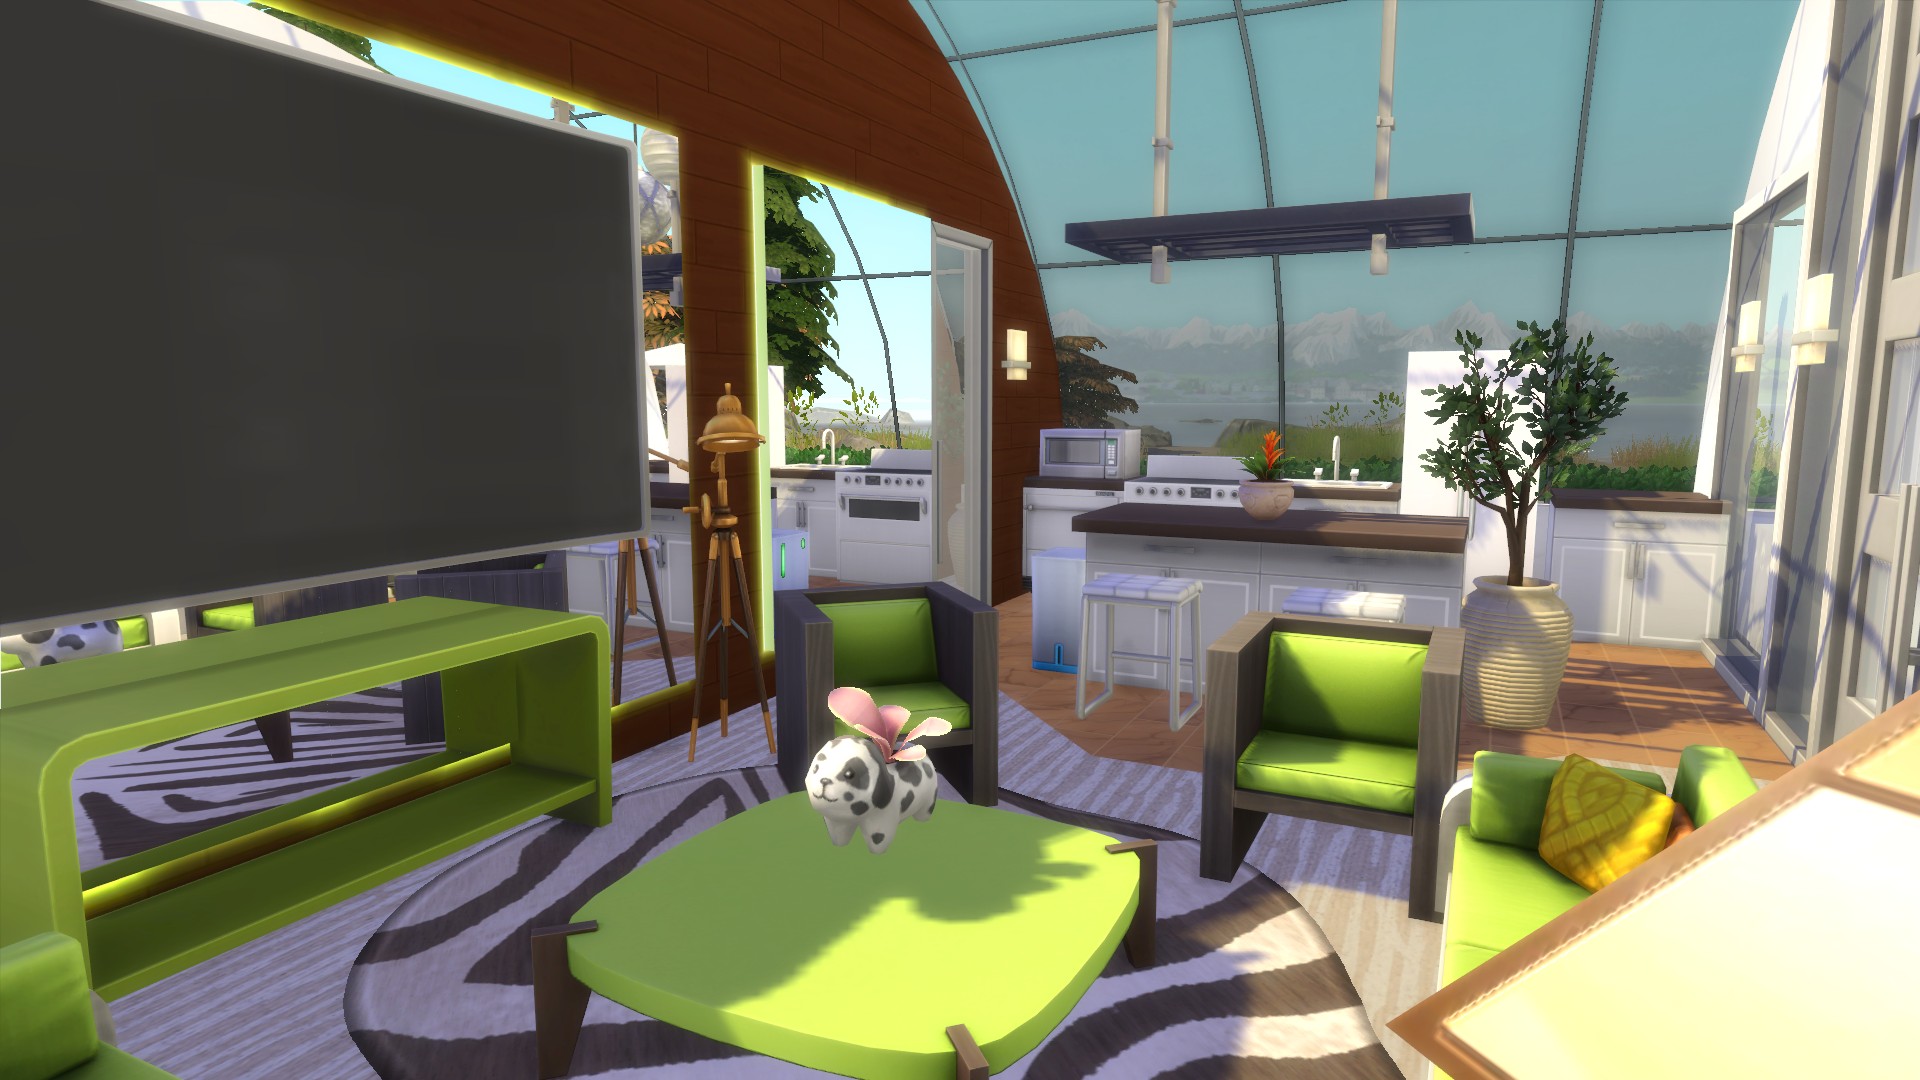 The Sims: 13 construções incríveis que você pode criar no jogo e